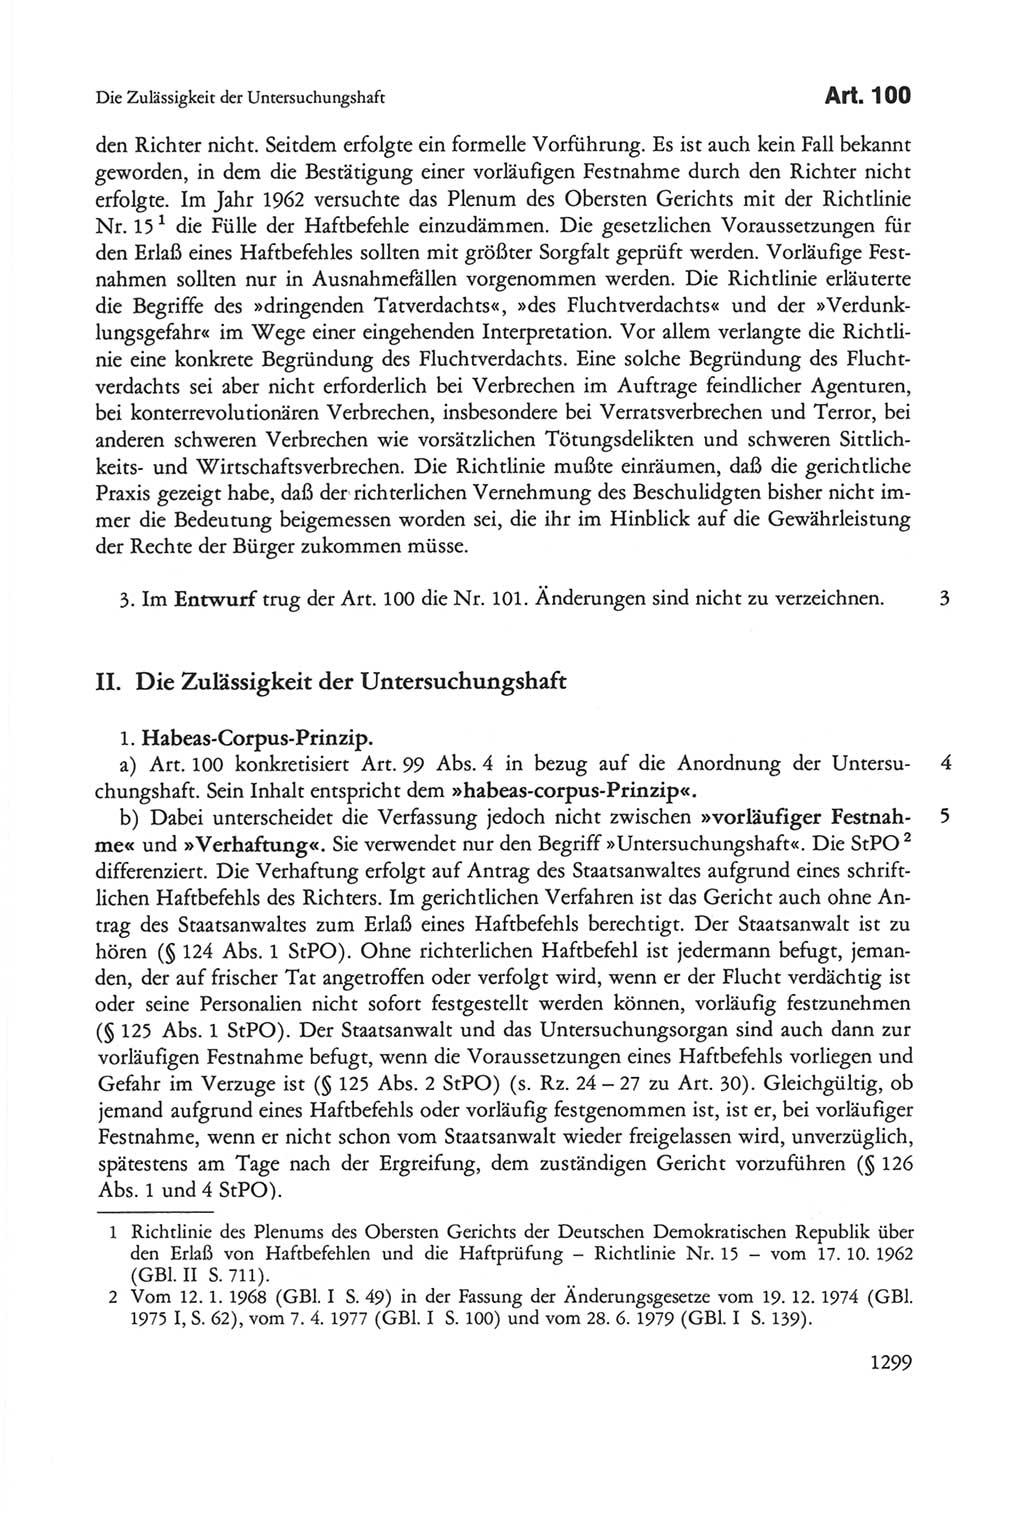 Die sozialistische Verfassung der Deutschen Demokratischen Republik (DDR), Kommentar 1982, Seite 1299 (Soz. Verf. DDR Komm. 1982, S. 1299)